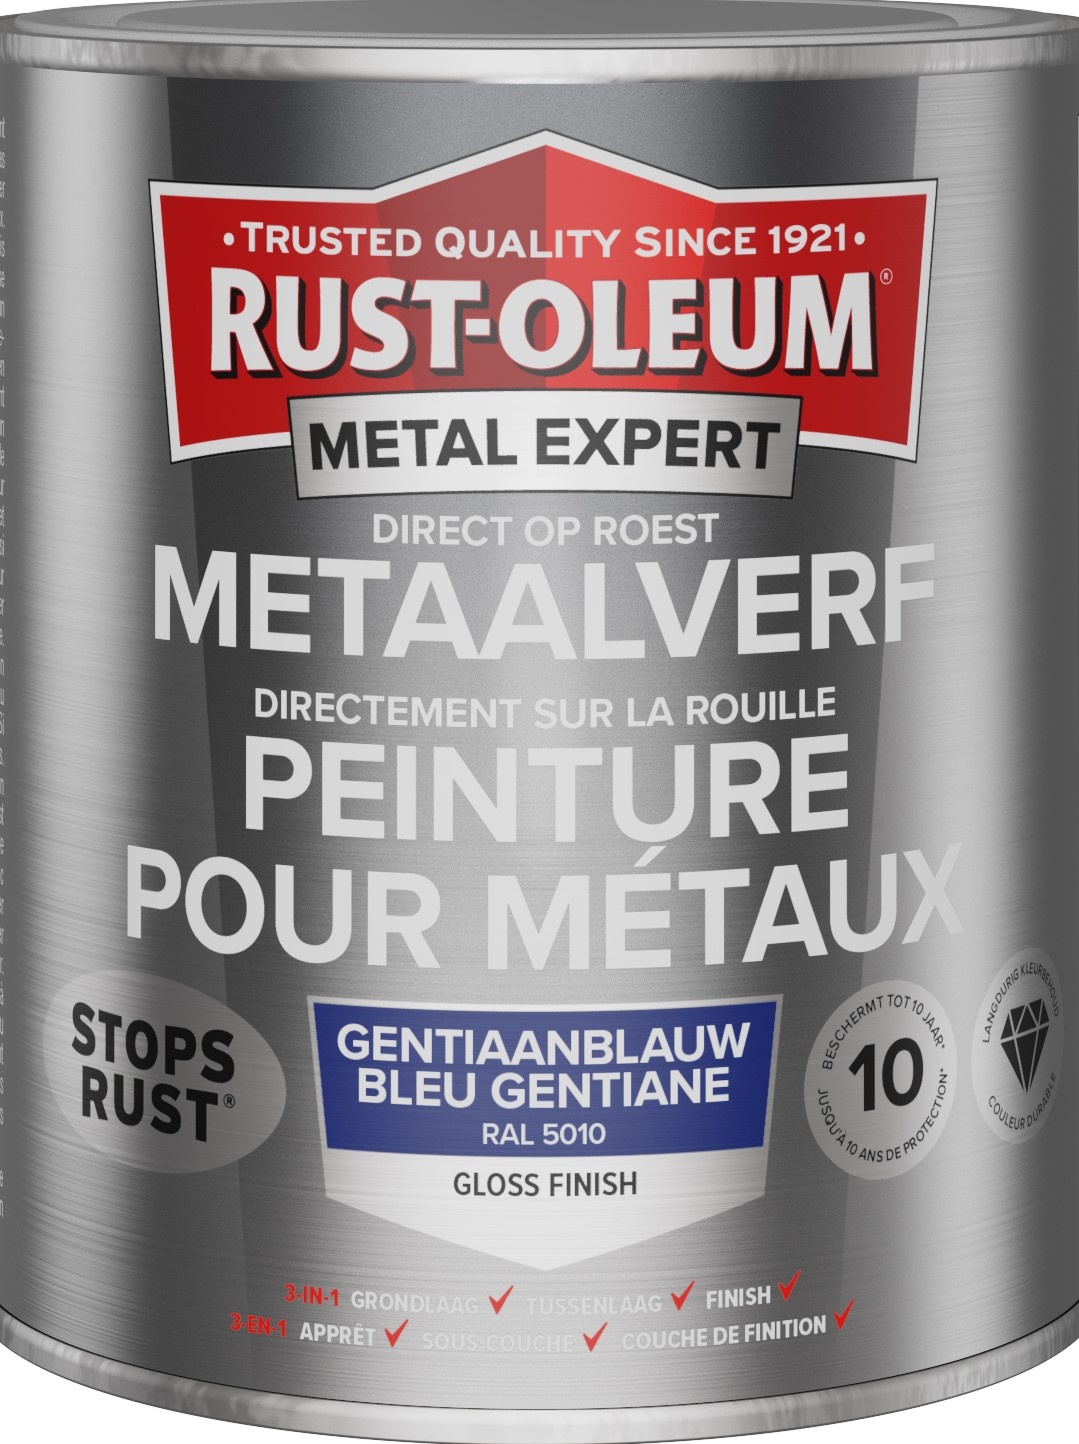 rust-oleum metal expert metaalverf gloss ral 5010 0.25 ltr